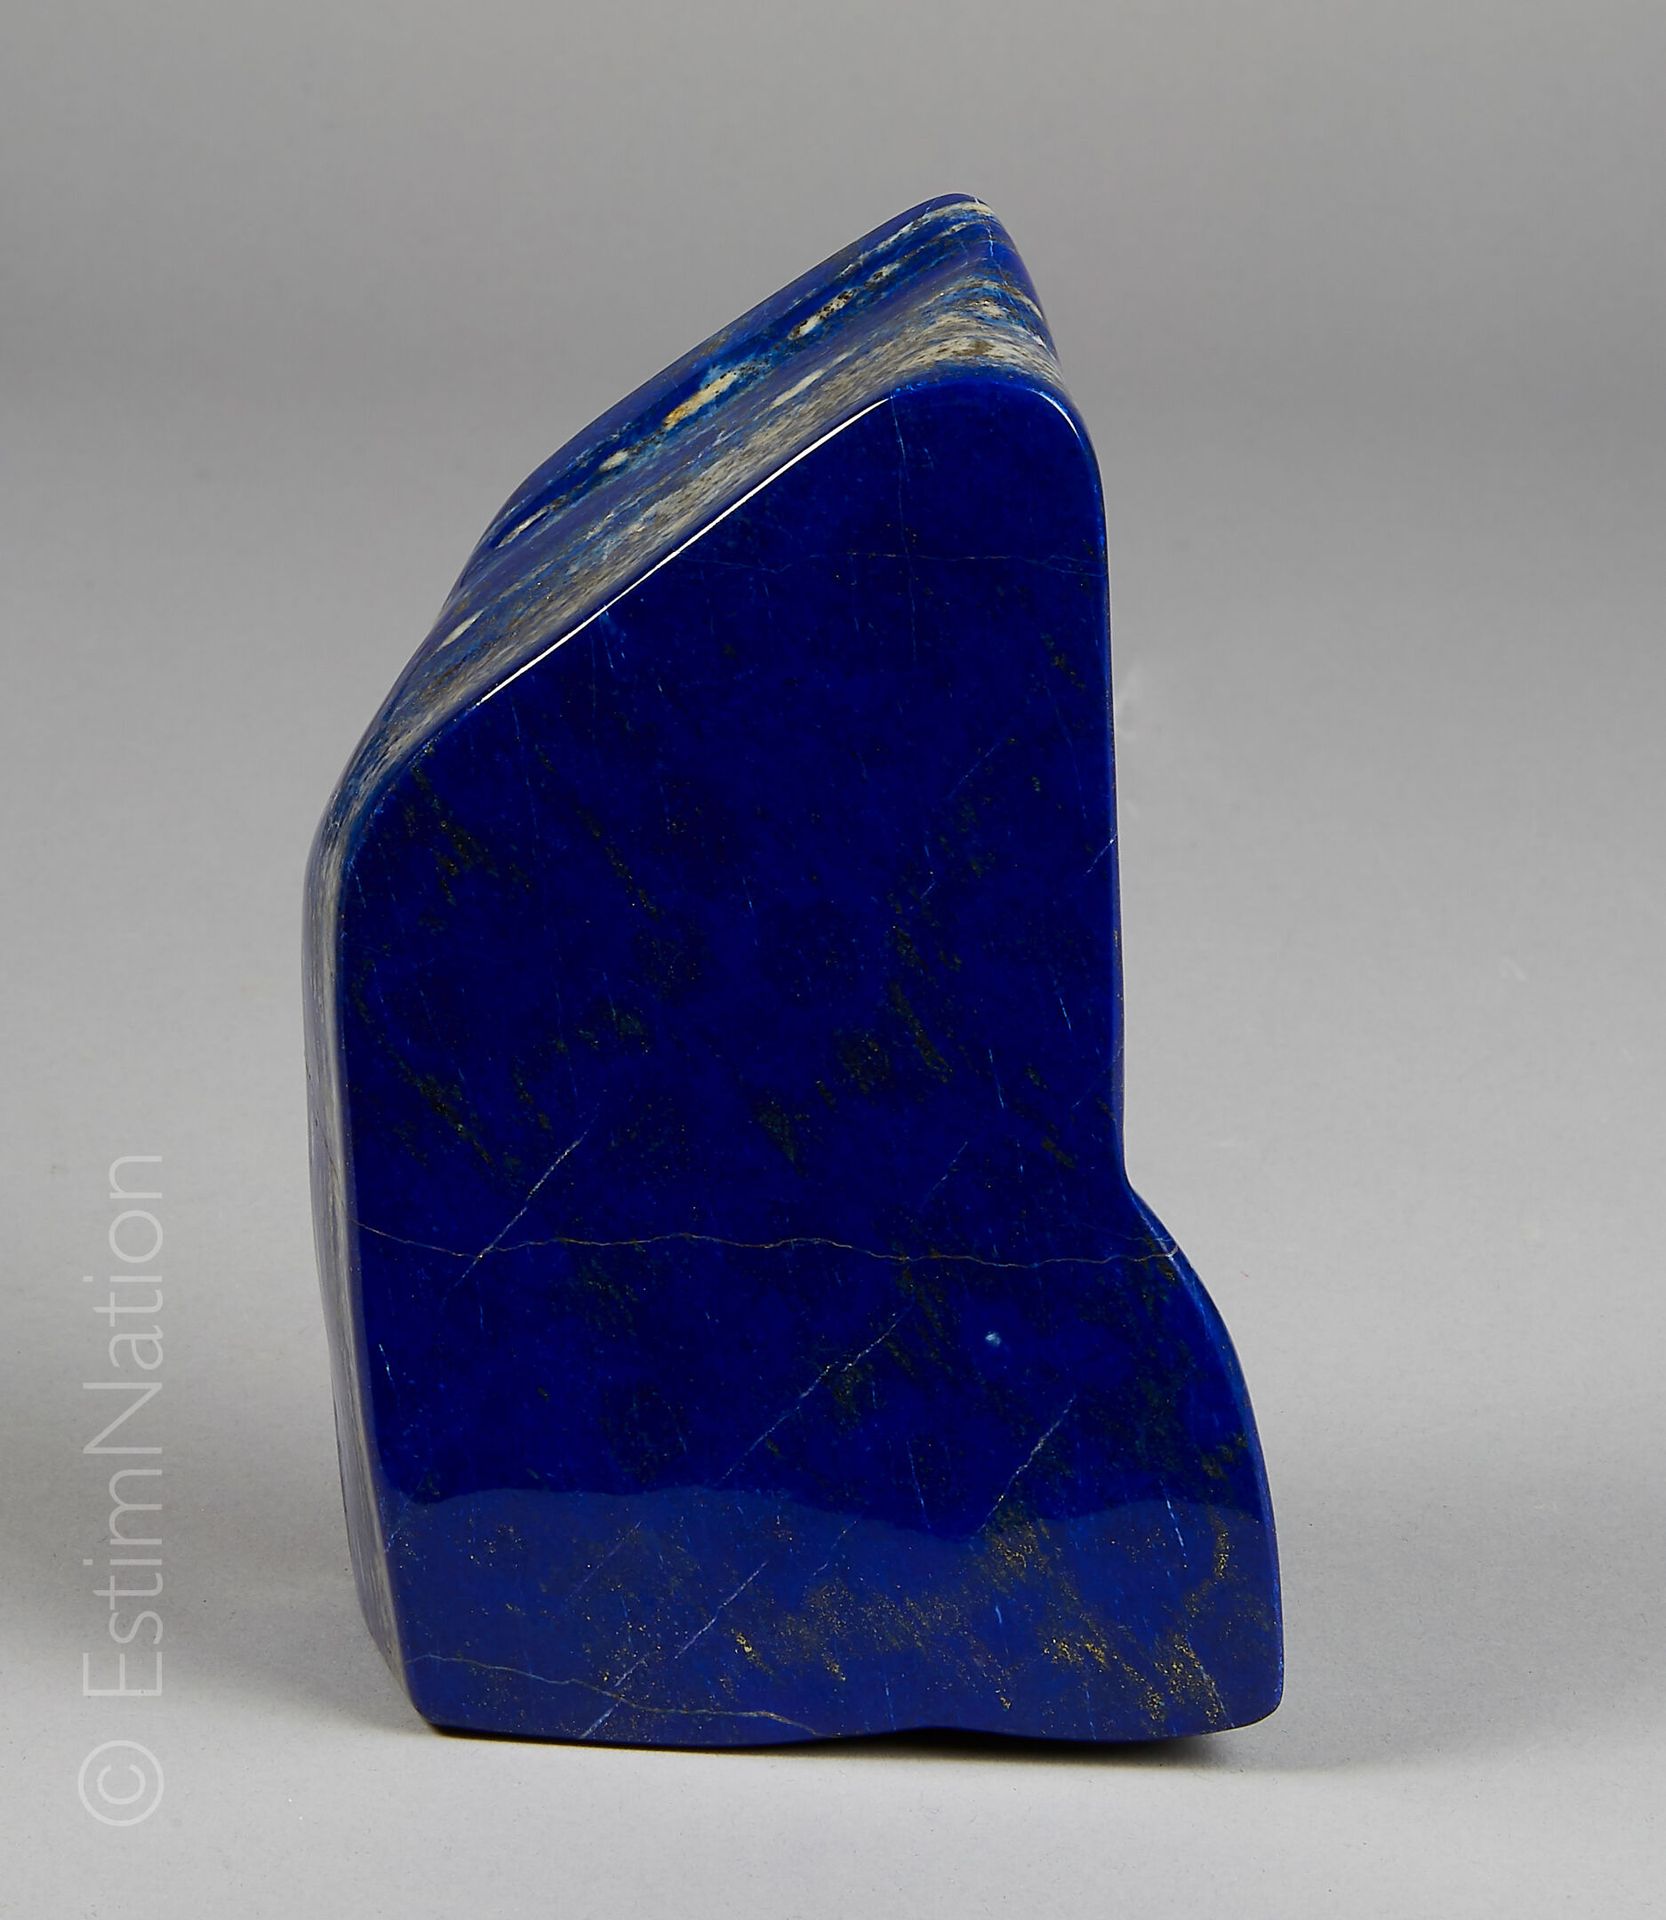 Lapis Lazuli Lapislázuli en bloque pulido. Procedencia : Afganistán

Dimensiones&hellip;